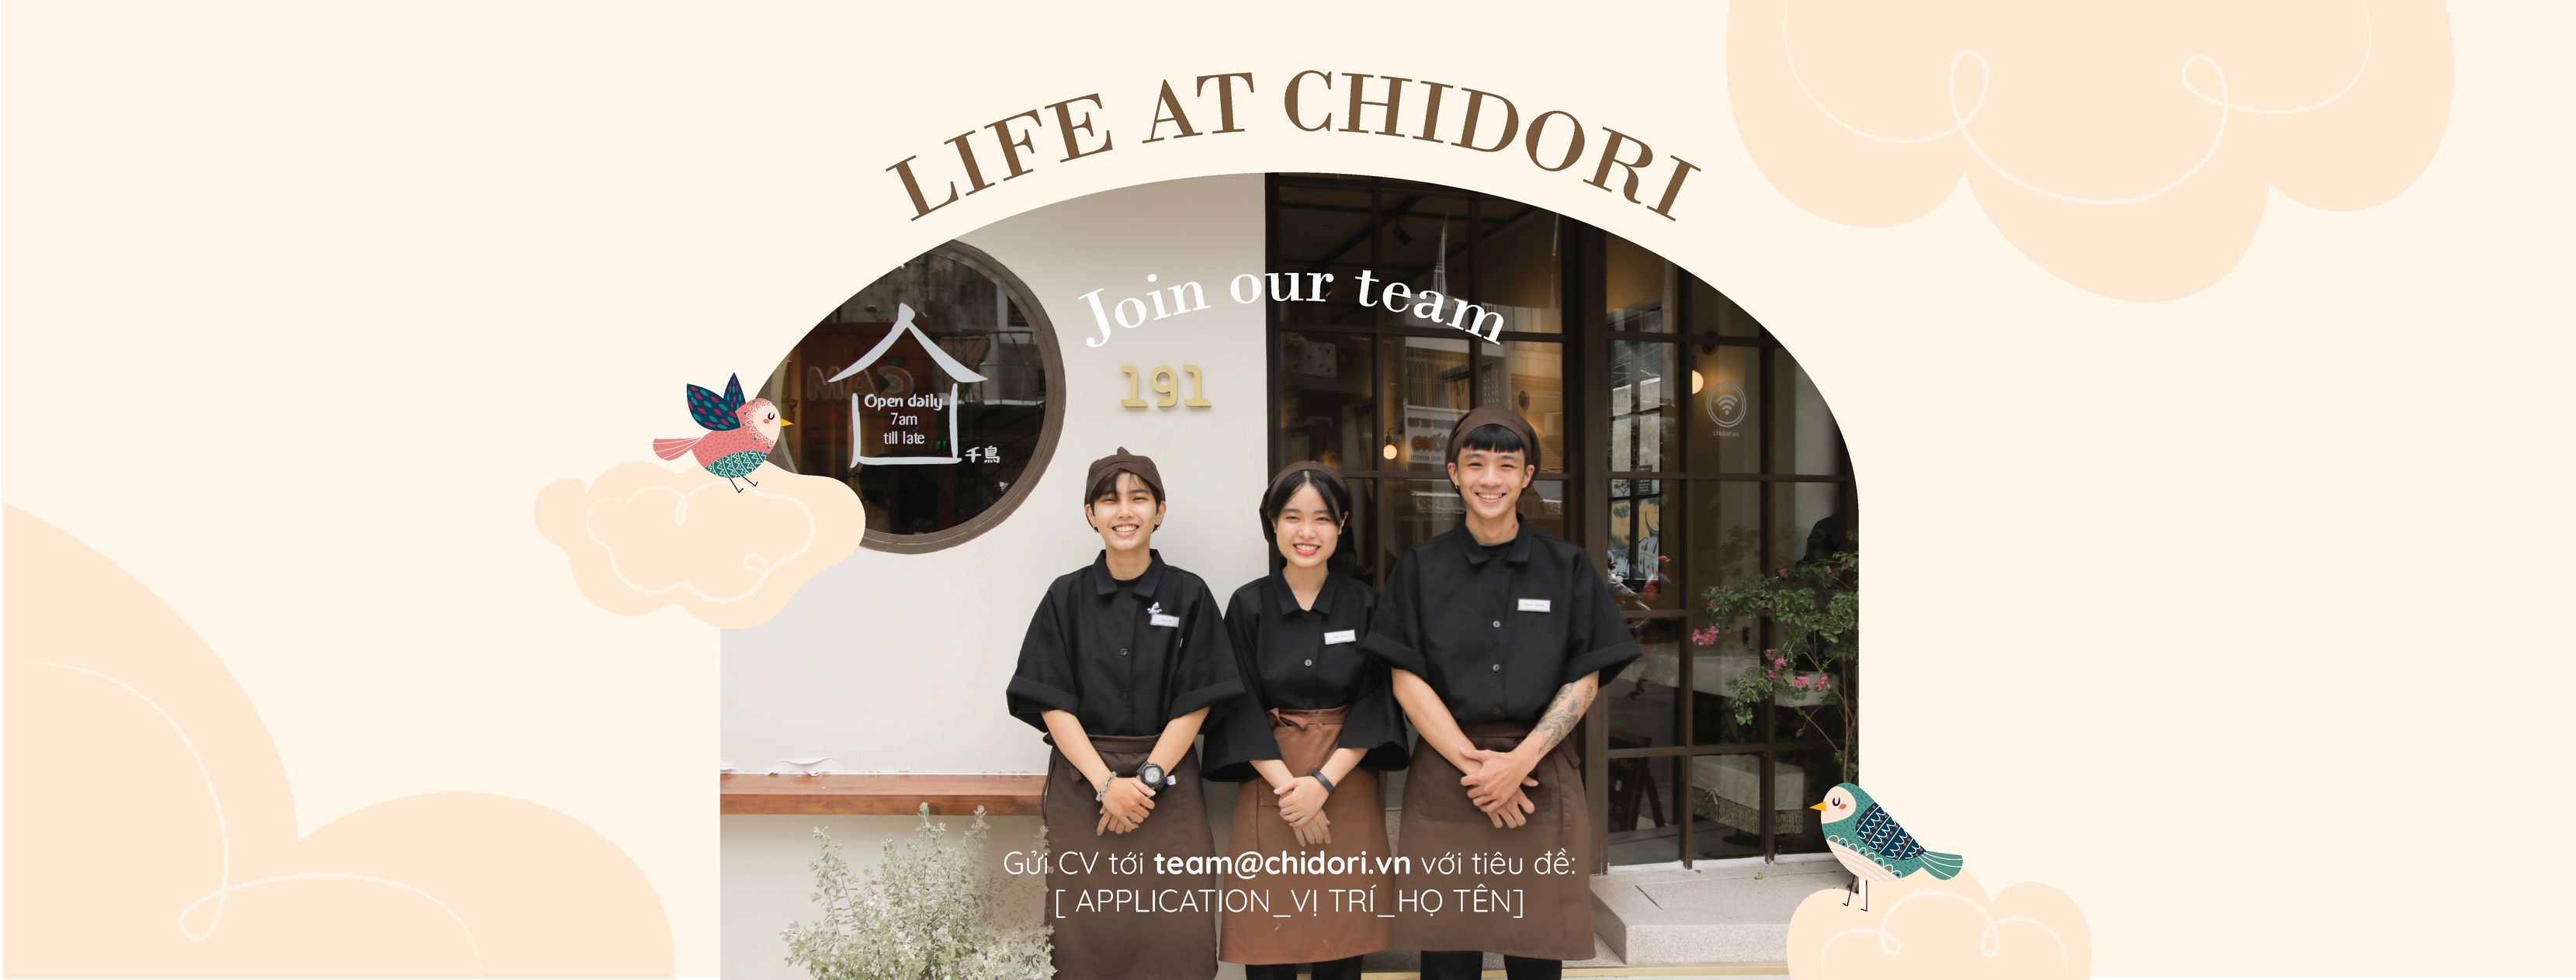 Cơ hội nghề nghiệp tại Chidori 